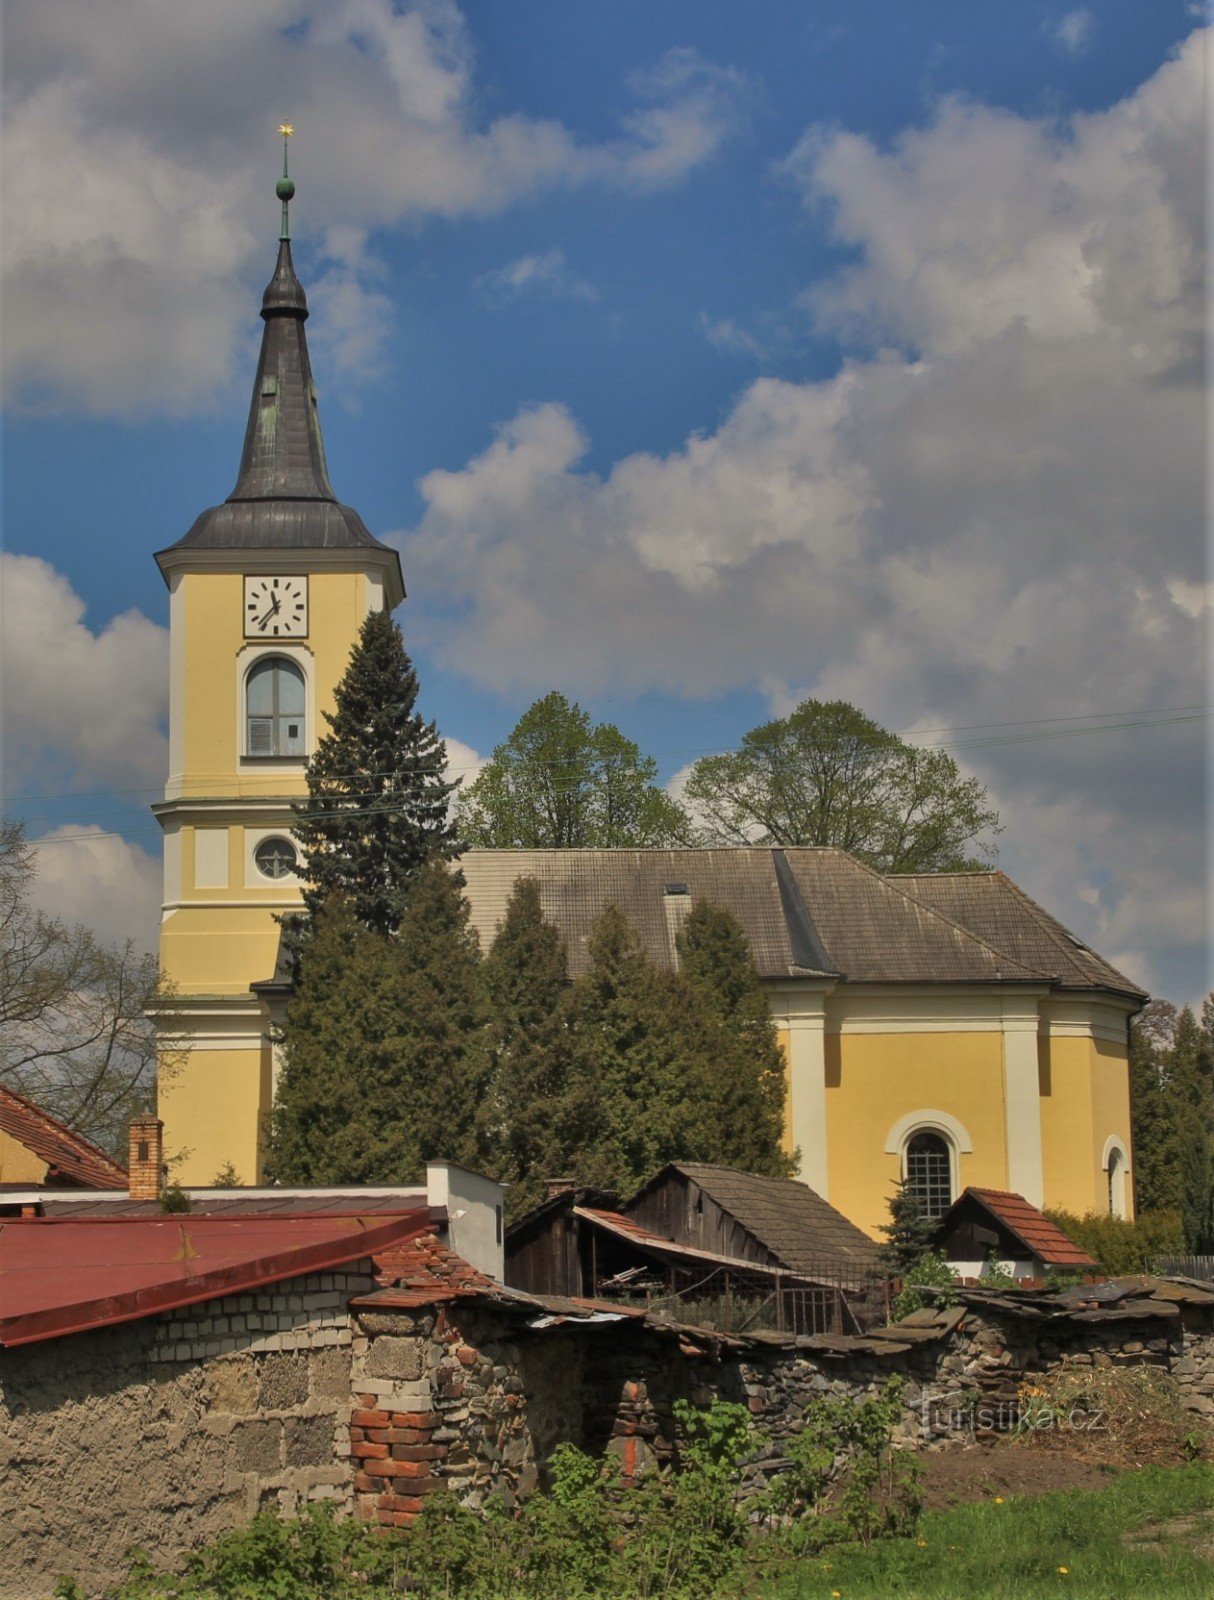 Widok ogólny kościoła ewangelickiego od strony rynku